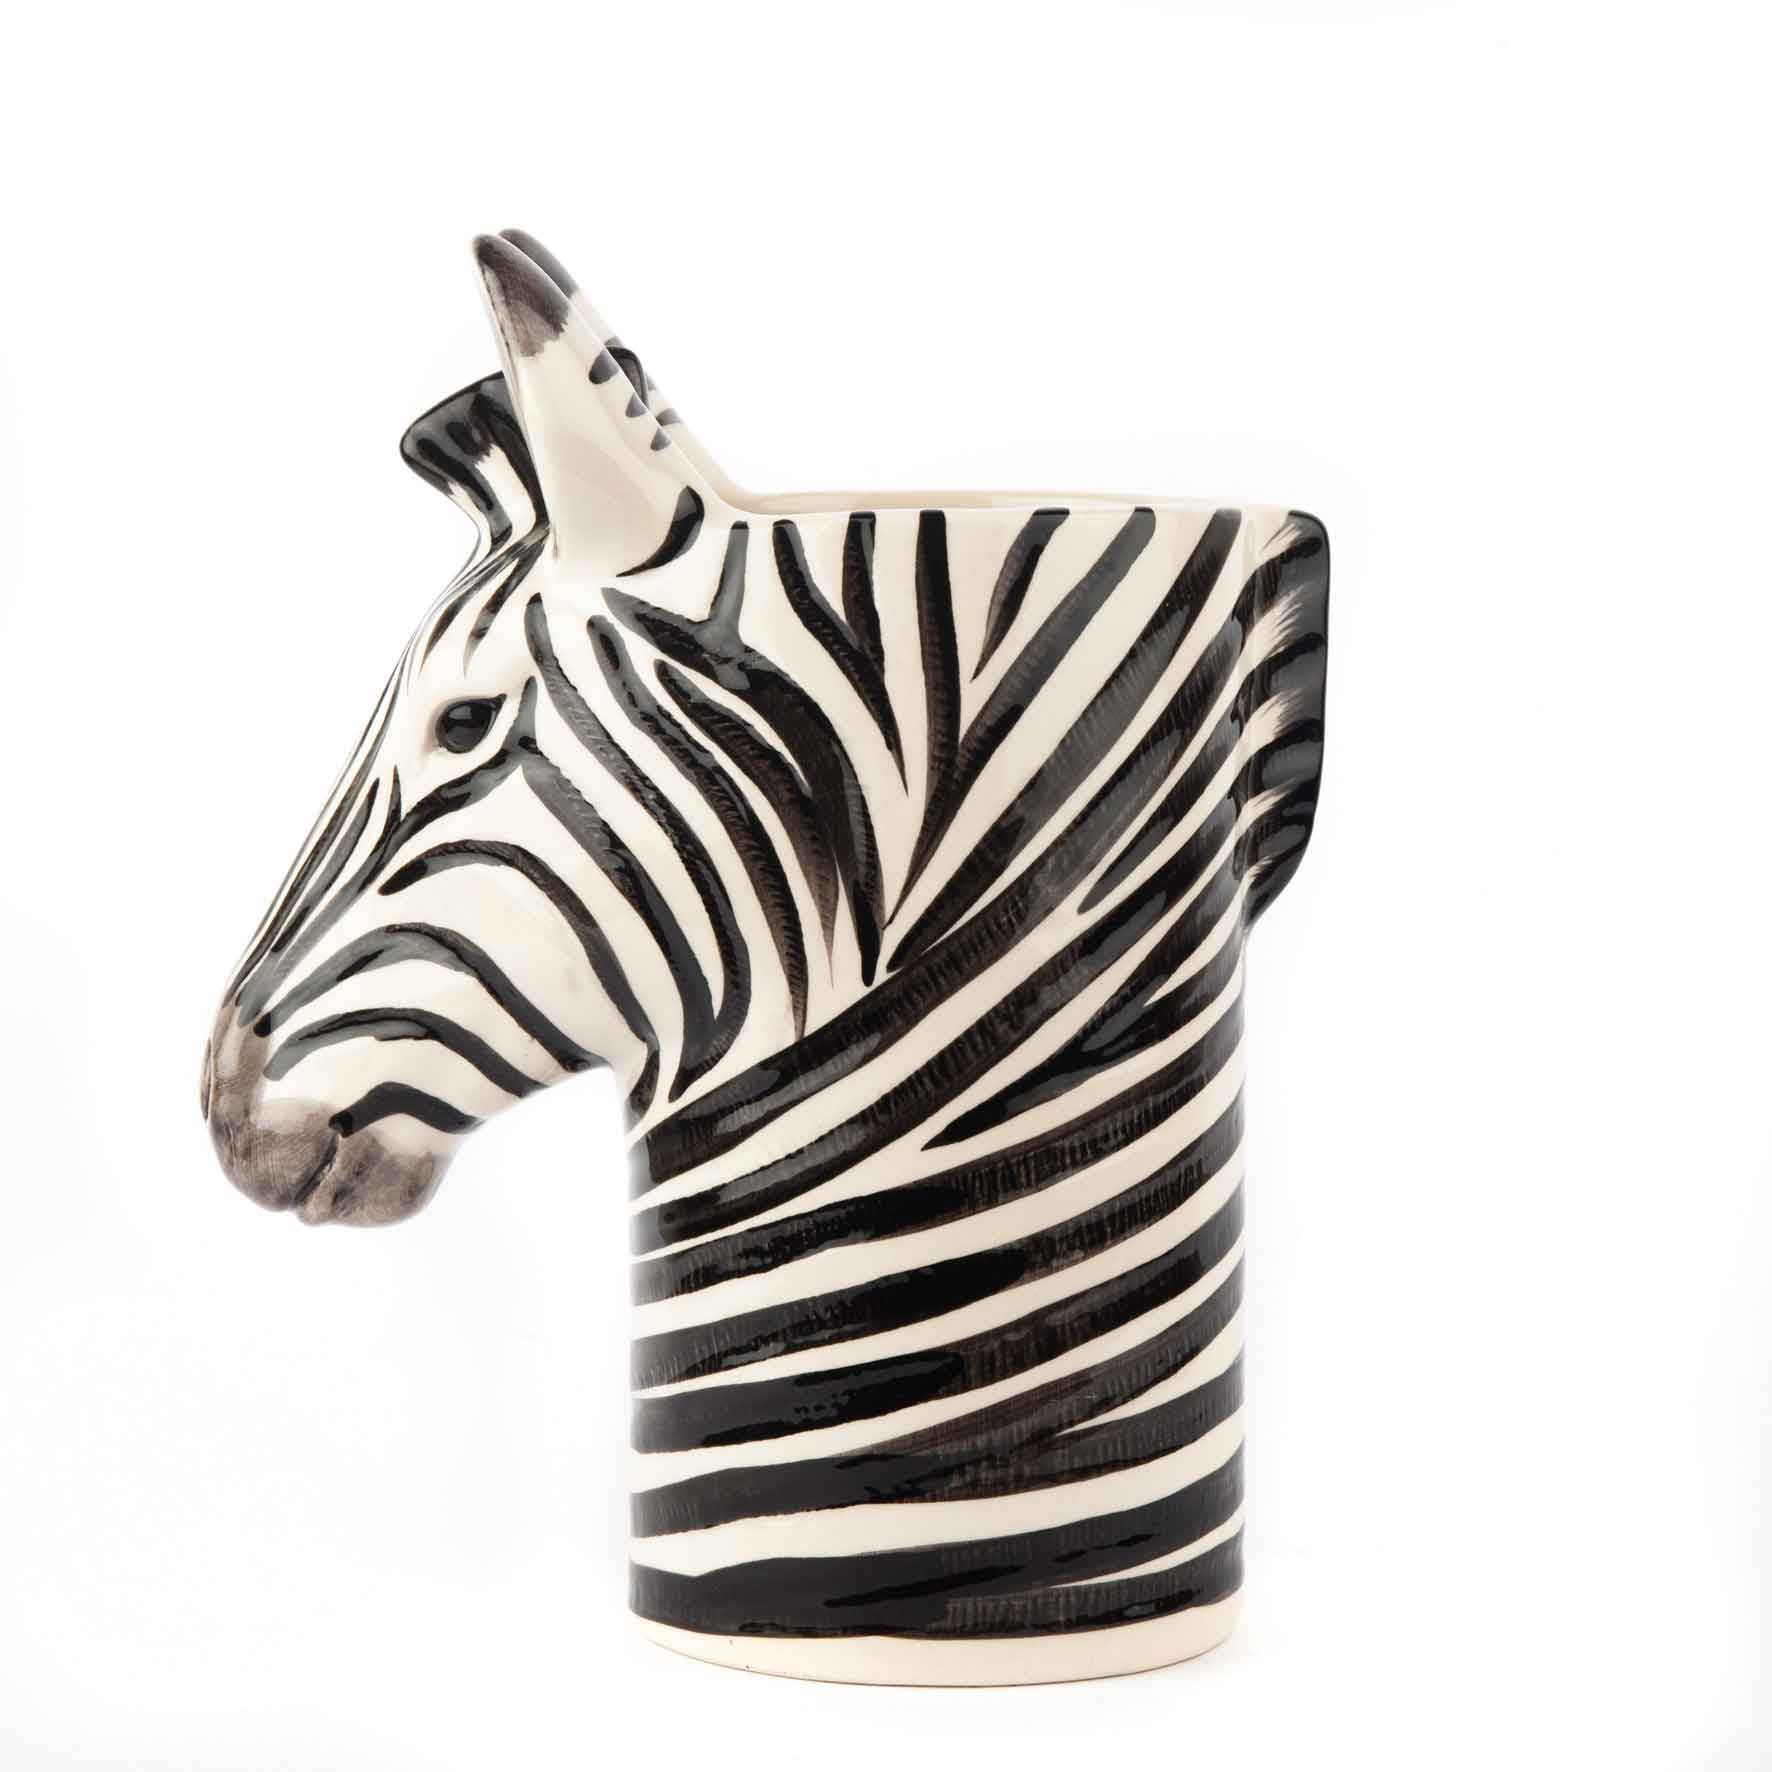 Utensilien Pot "Zebra" - von Quail Ceramics